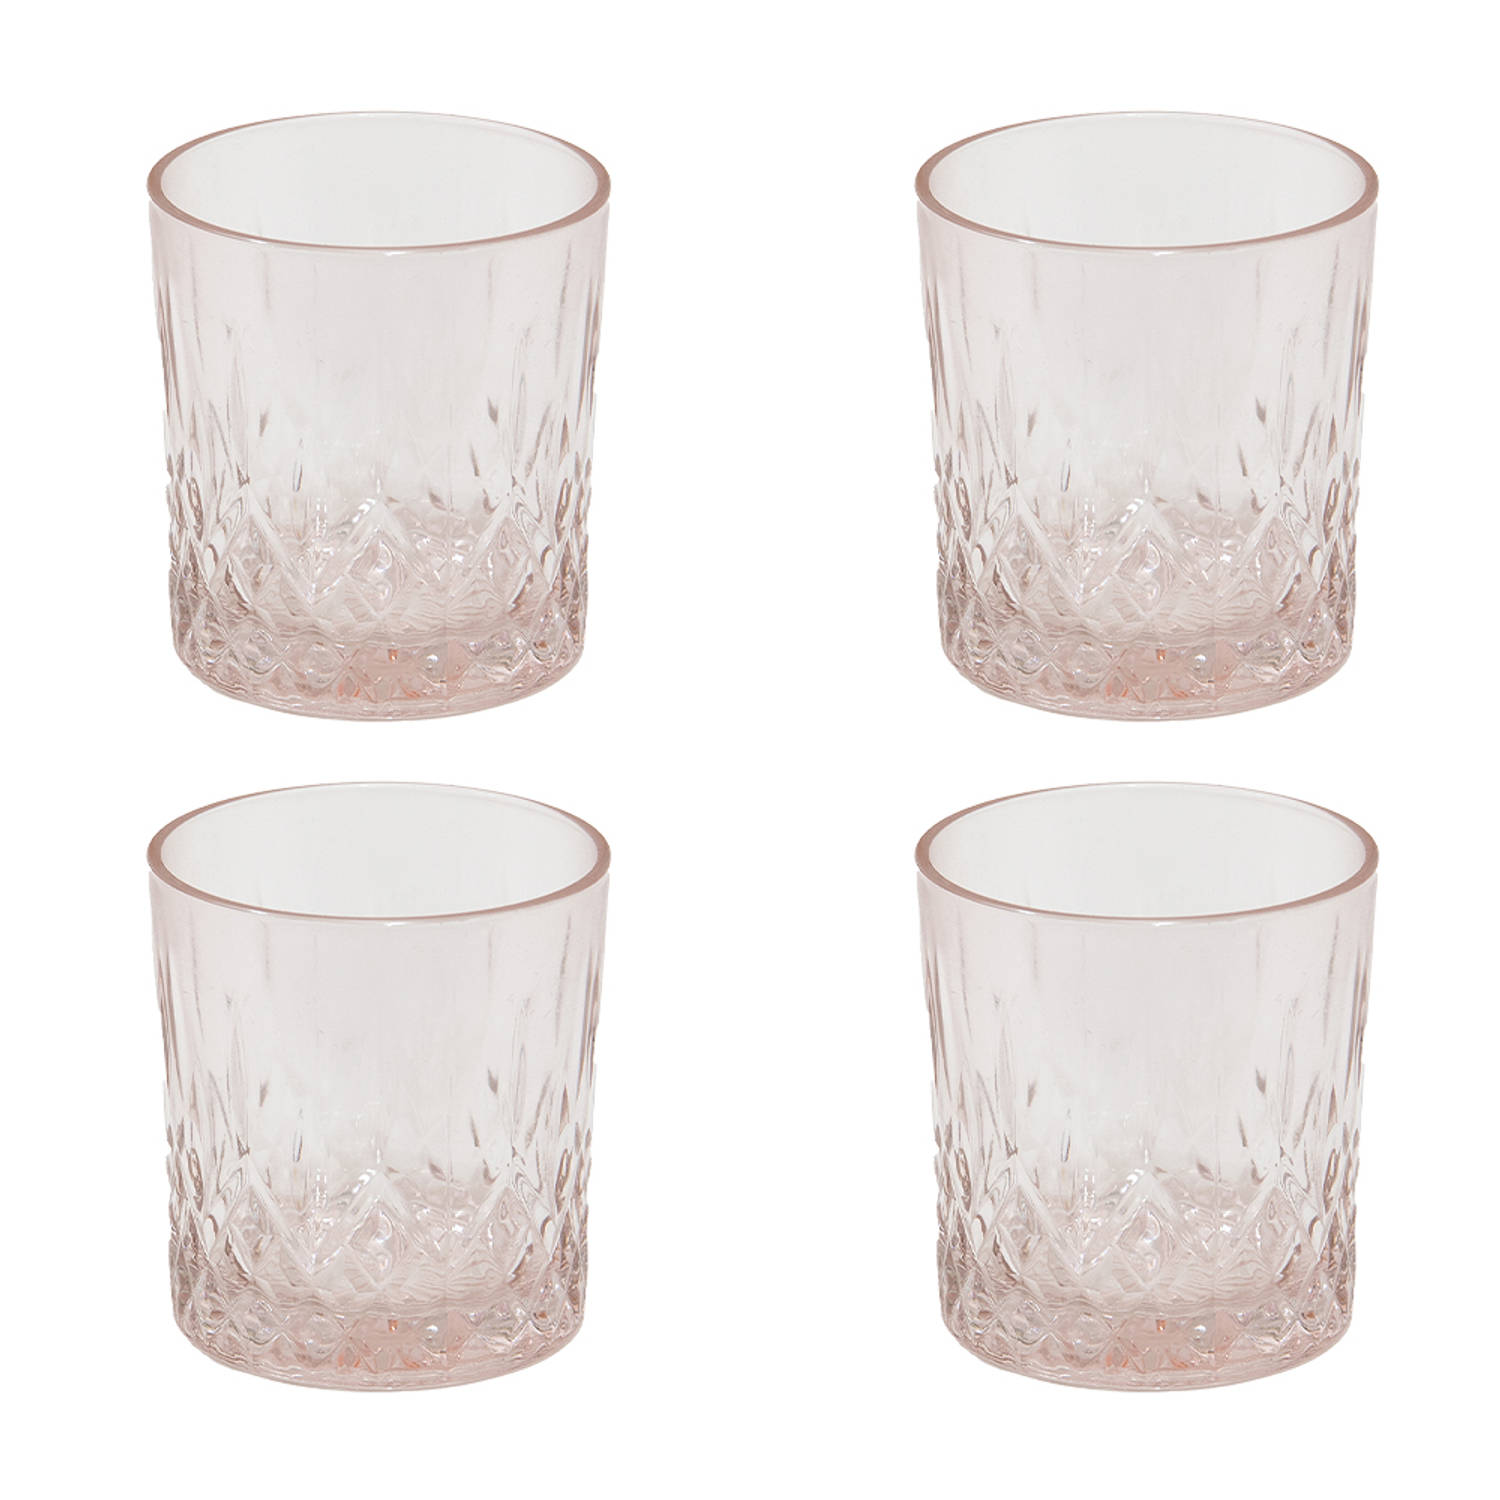 HAES DECO - Waterglas, Drinkglas set van 4 glazen - inhoud glas 300 ml - formaat glas Ø 8x9 cm - Waterglazen, Drinkglazen